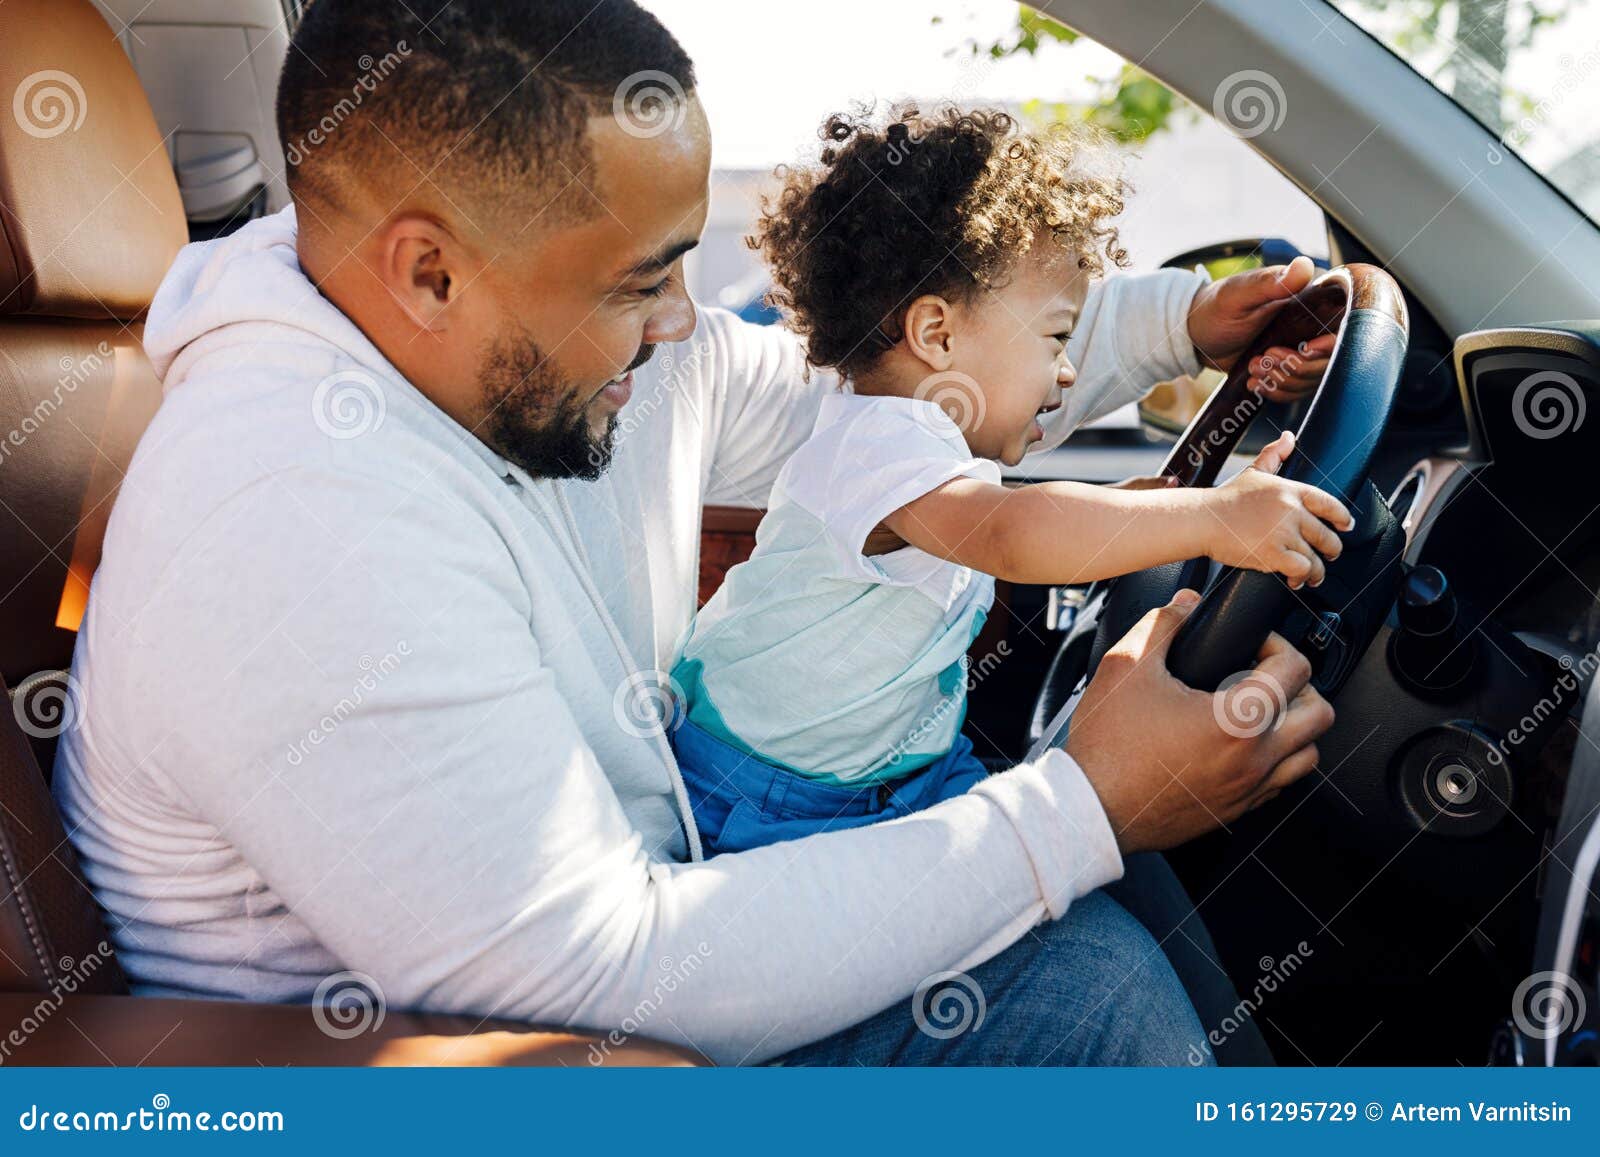 erosie studio nederlaag Een Kleine Jongen Die Op De Schoot Van Zijn Vader Zit in Een Auto Stock  Afbeelding - Image of familie, voertuig: 161295729